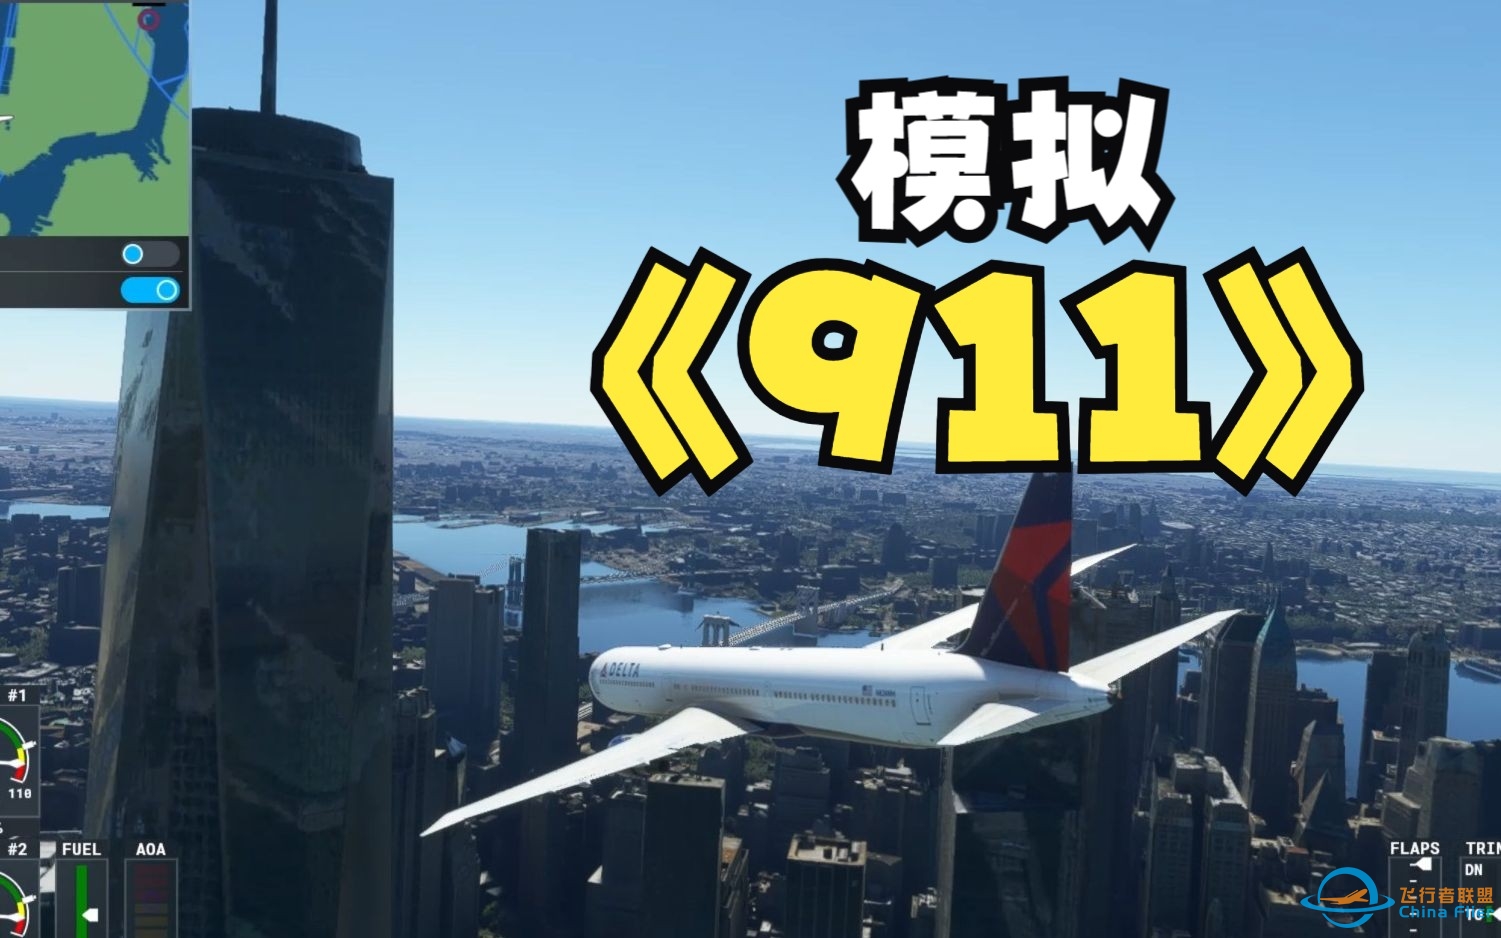 模拟911撞击世贸大厦事件  微软飞行模拟2020-4940 